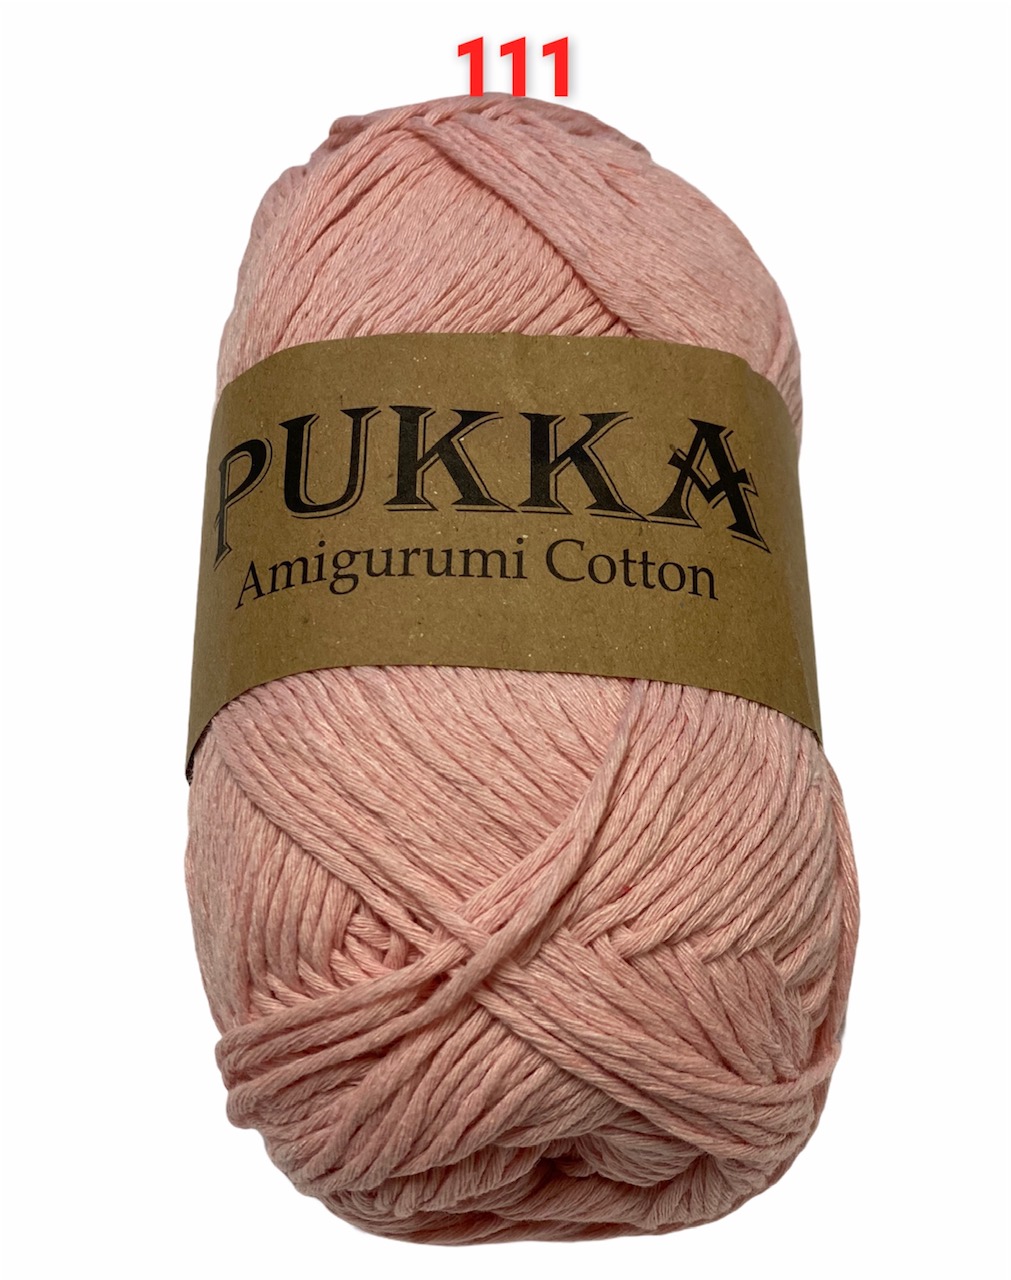 PUKKA Amigurumi Cotton 100g,111